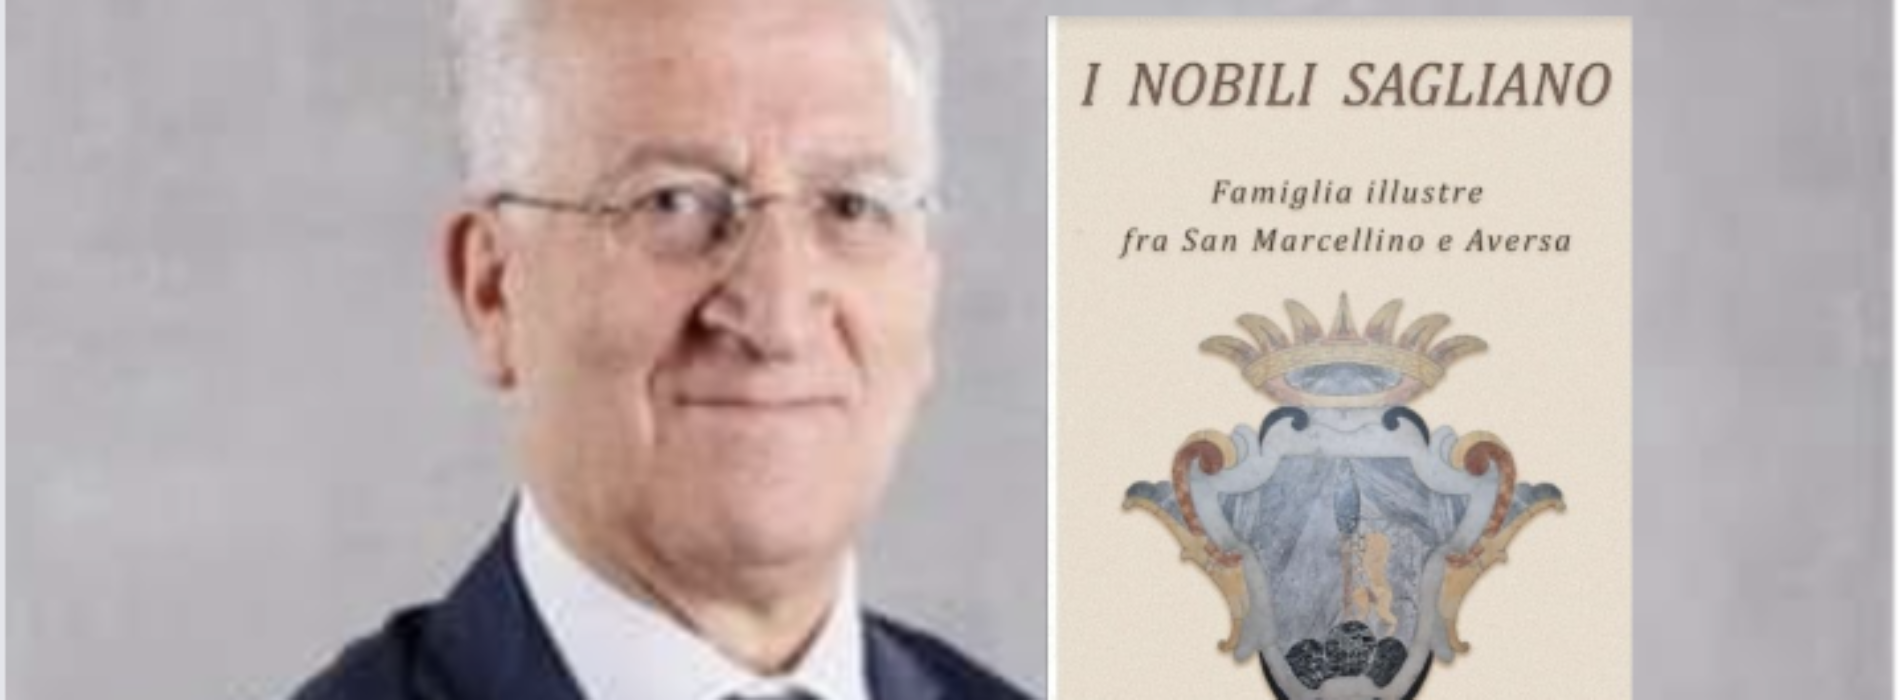 I nobili Sagliano, in libreria il nuovo libro di Ettore Cantile